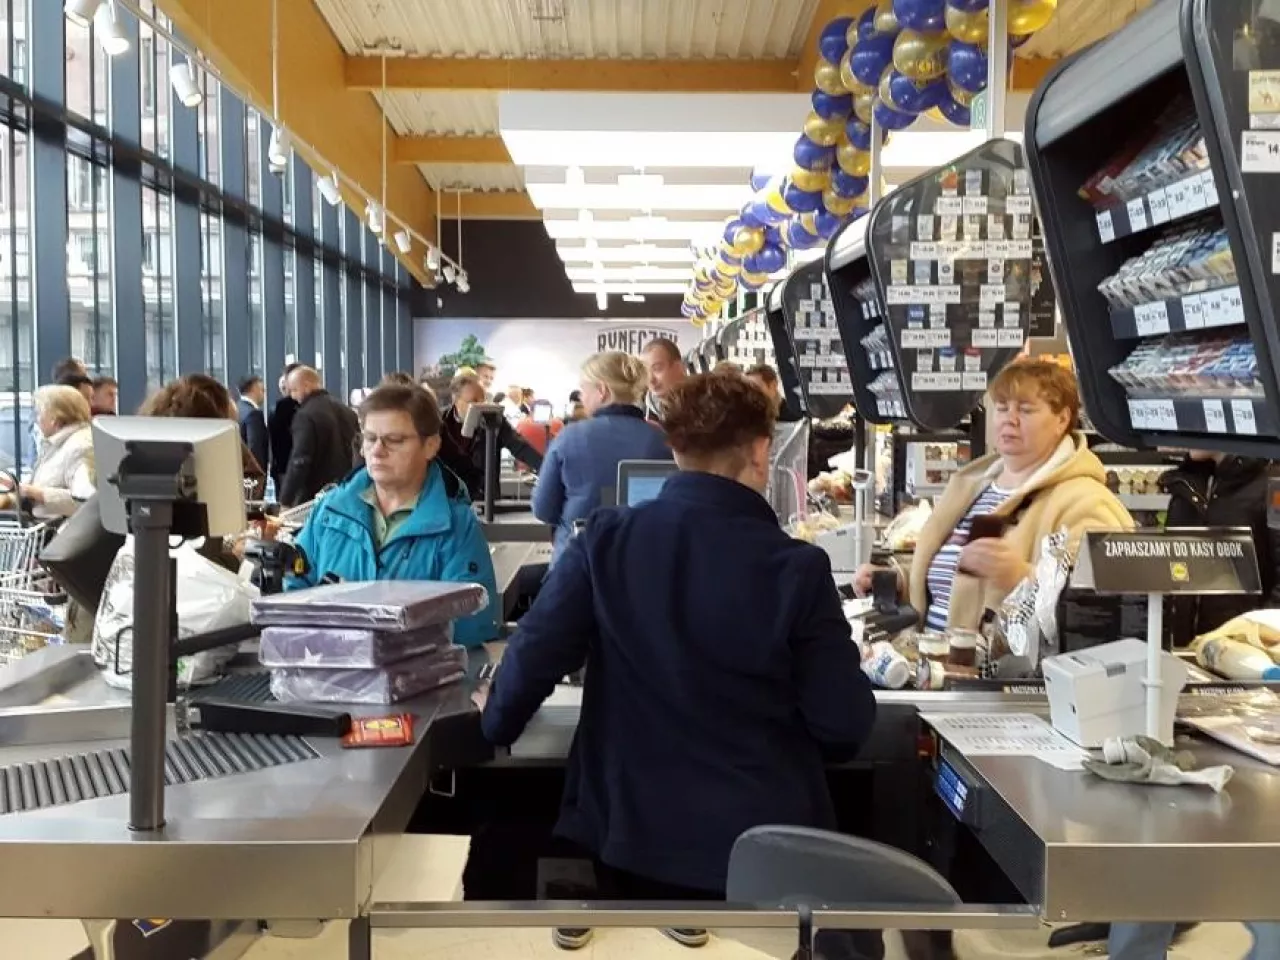 Brak rąk do pracy to wyzwanie dla wielu sklepów w Polsce (fot. wiadomoscihandlowe.pl/zdjęcie ilustracyjne)